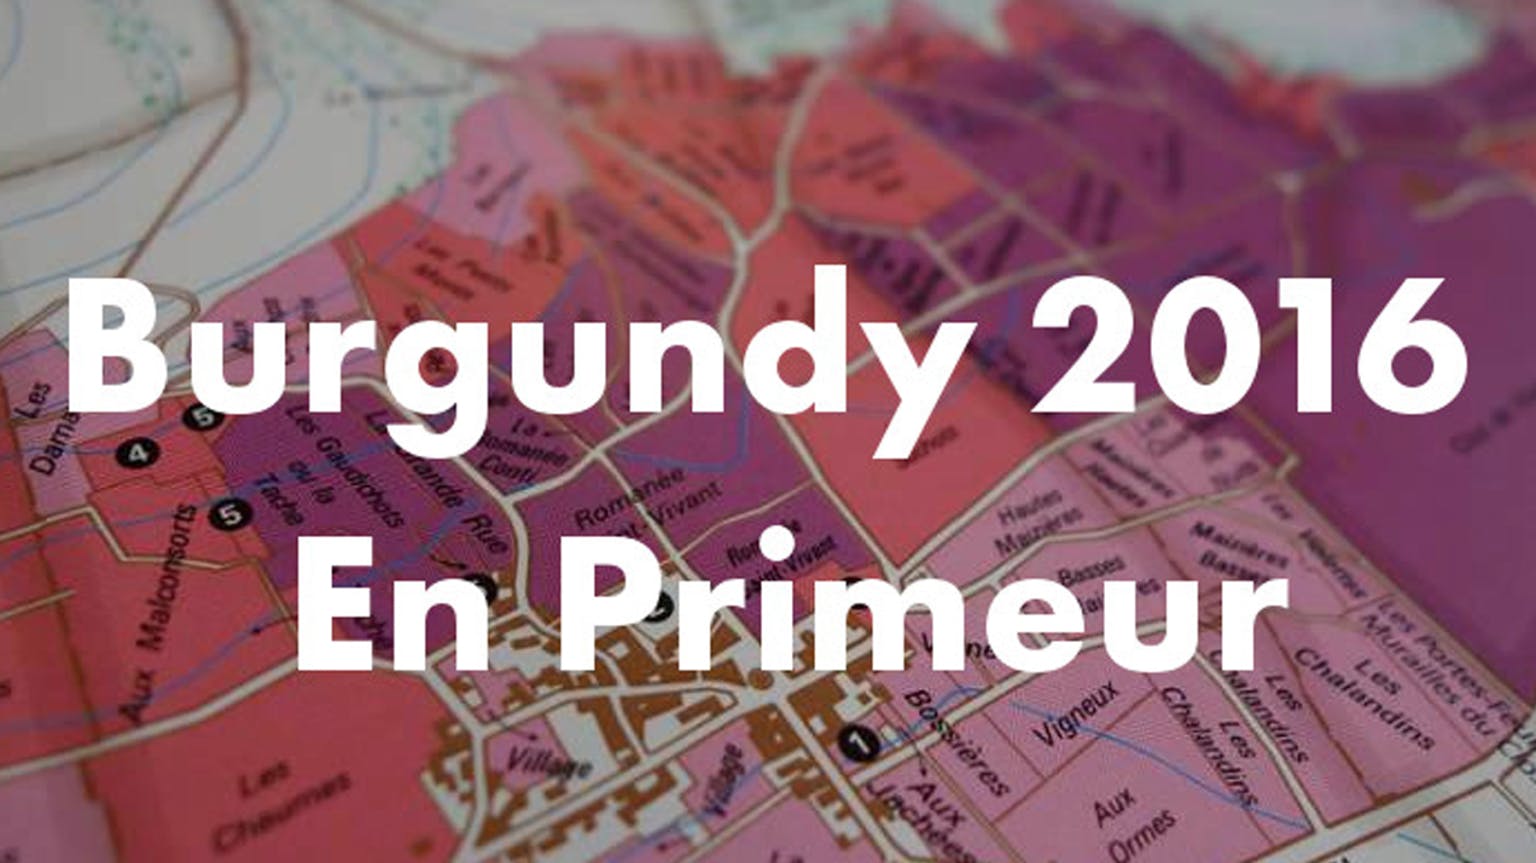 Burgundy 2016 En Primeur: Early Opinions